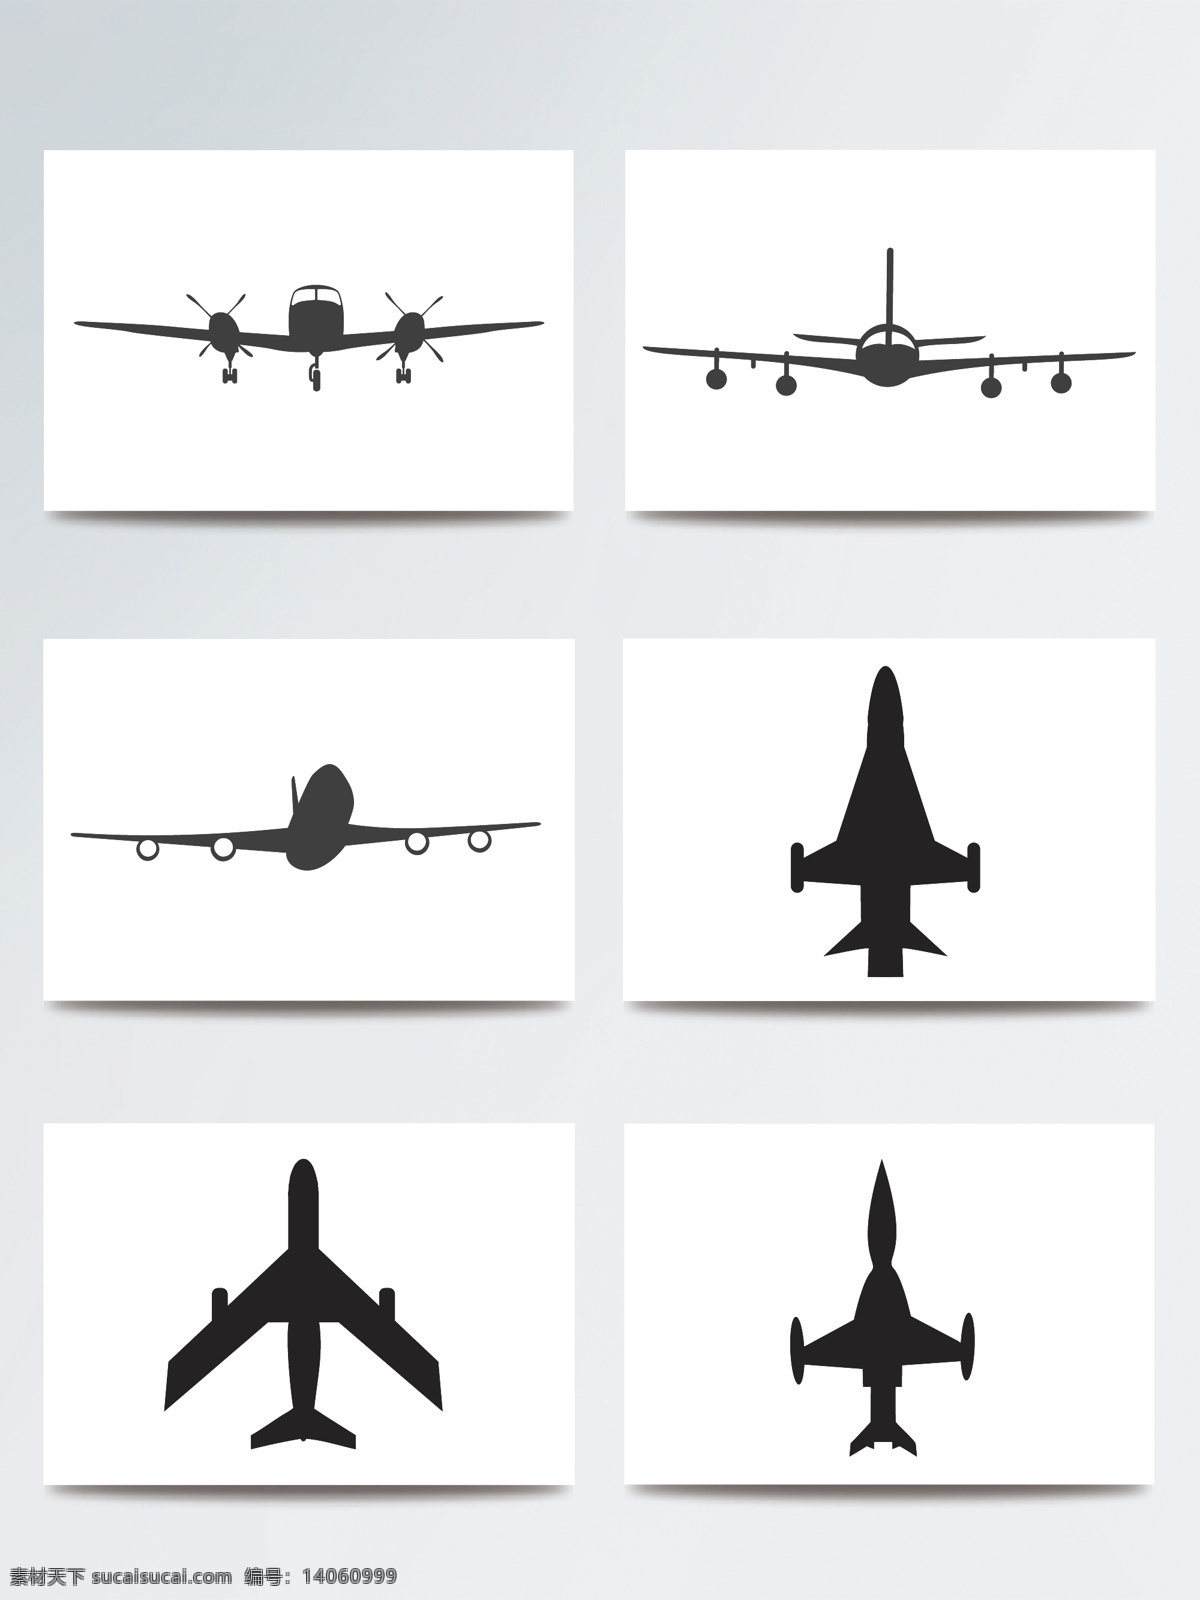 白色 飞机剪影 航空飞机 交通工具 客机 喷气式飞机 矢量飞机 矢量素材 现代科技 战斗机 飞机剪影矢量